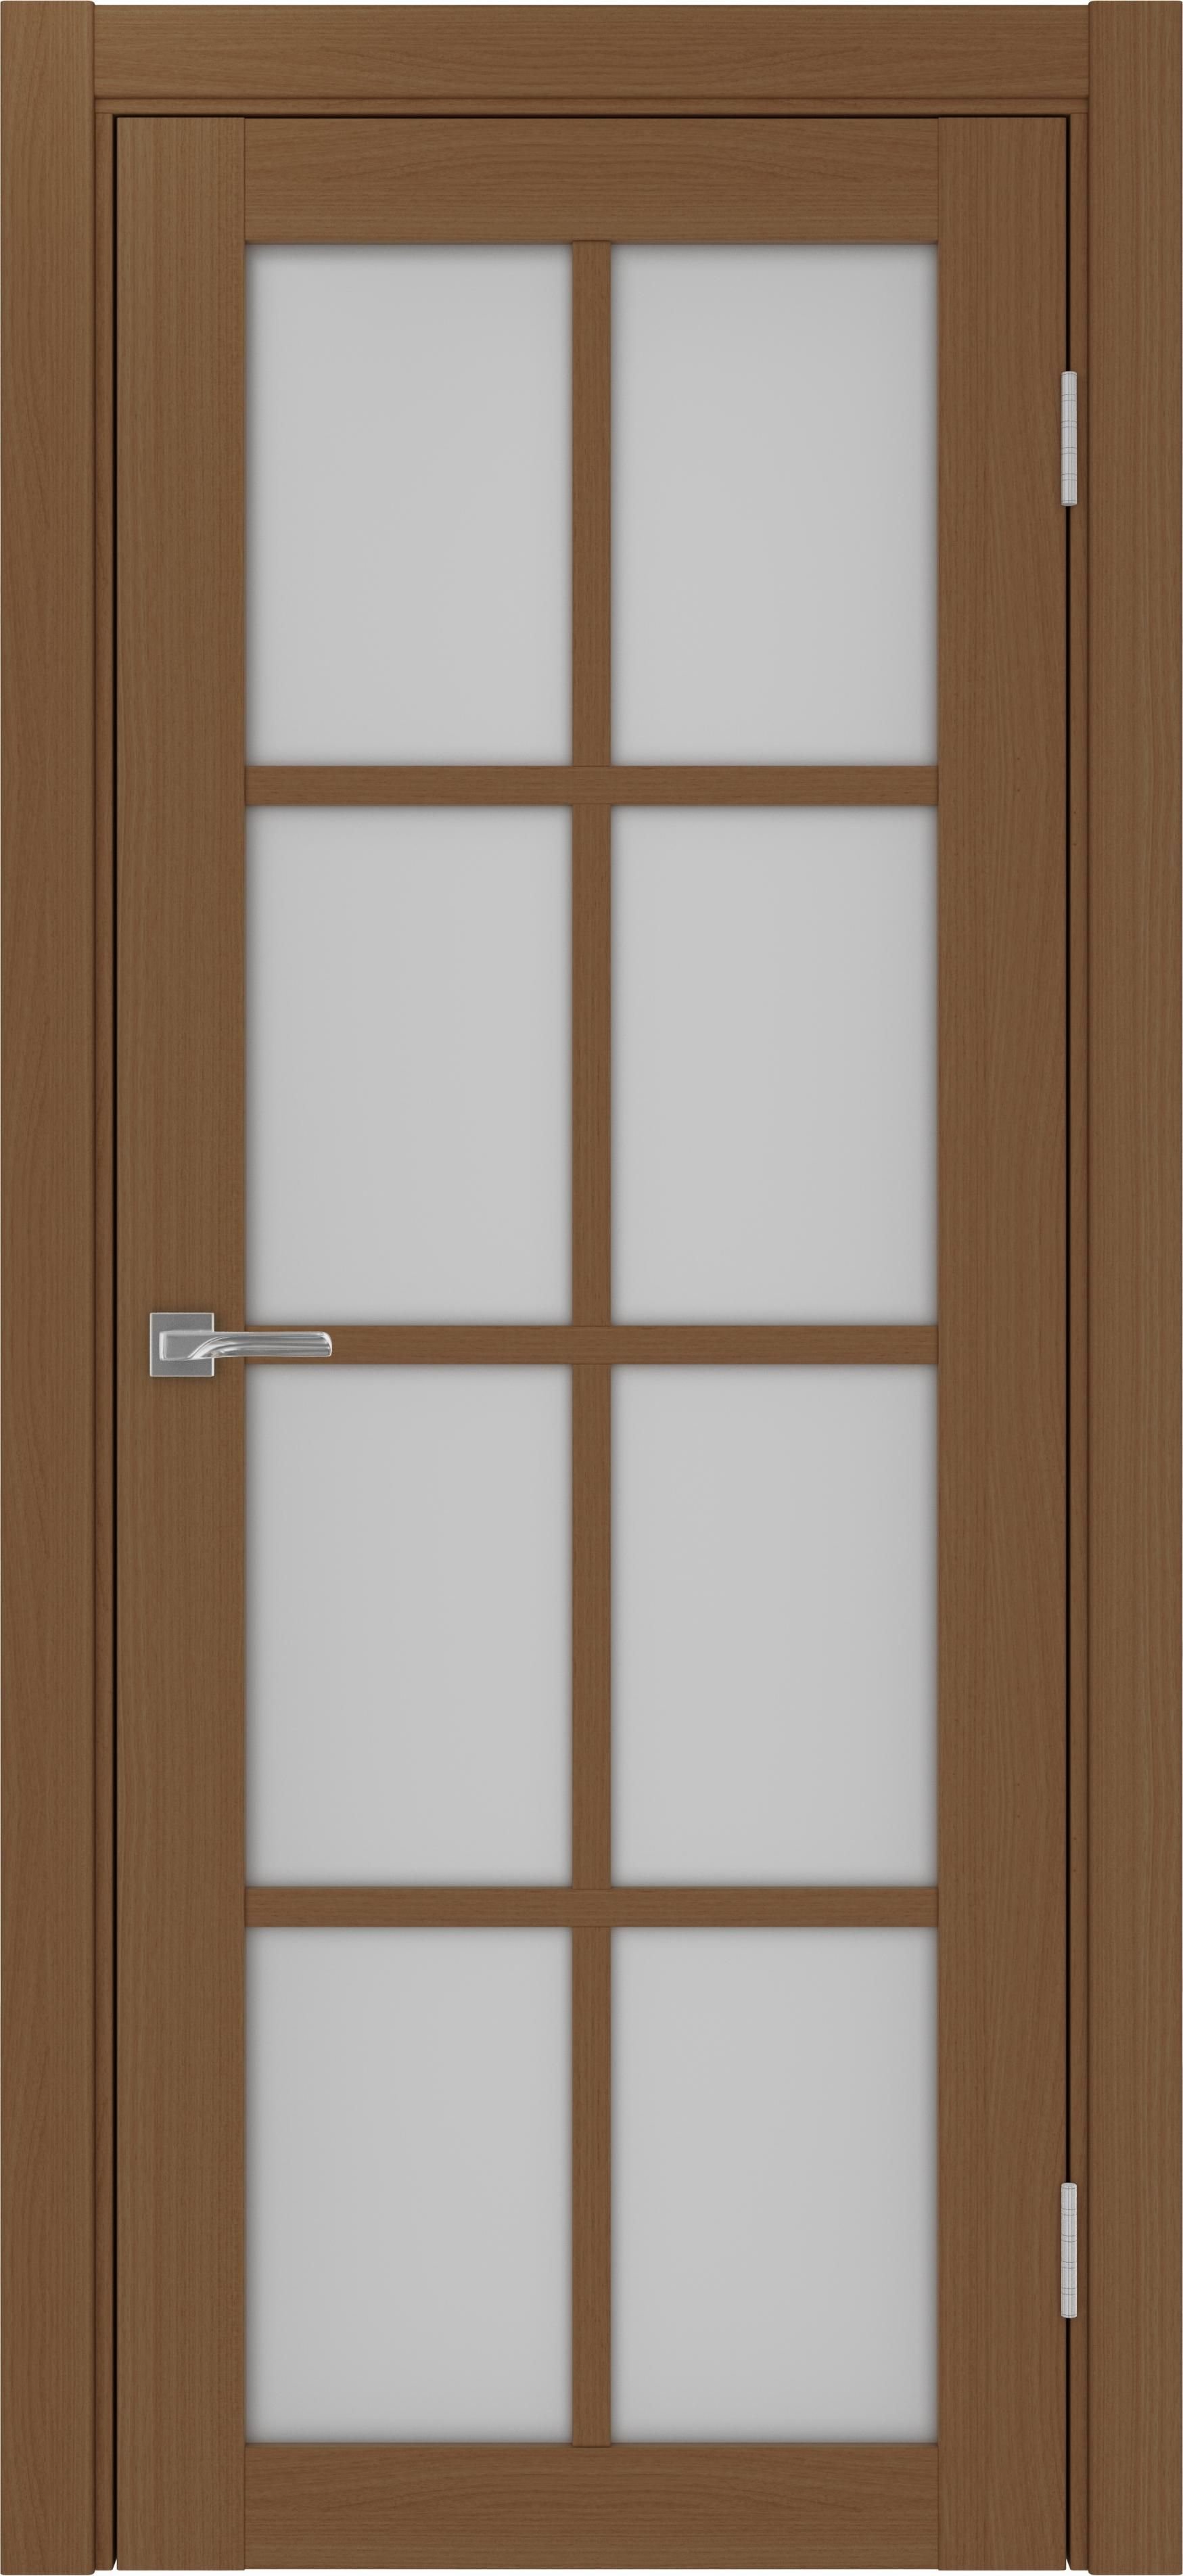 Межкомнатная дверь «Турин 541.2222 Орех» стекло сатин